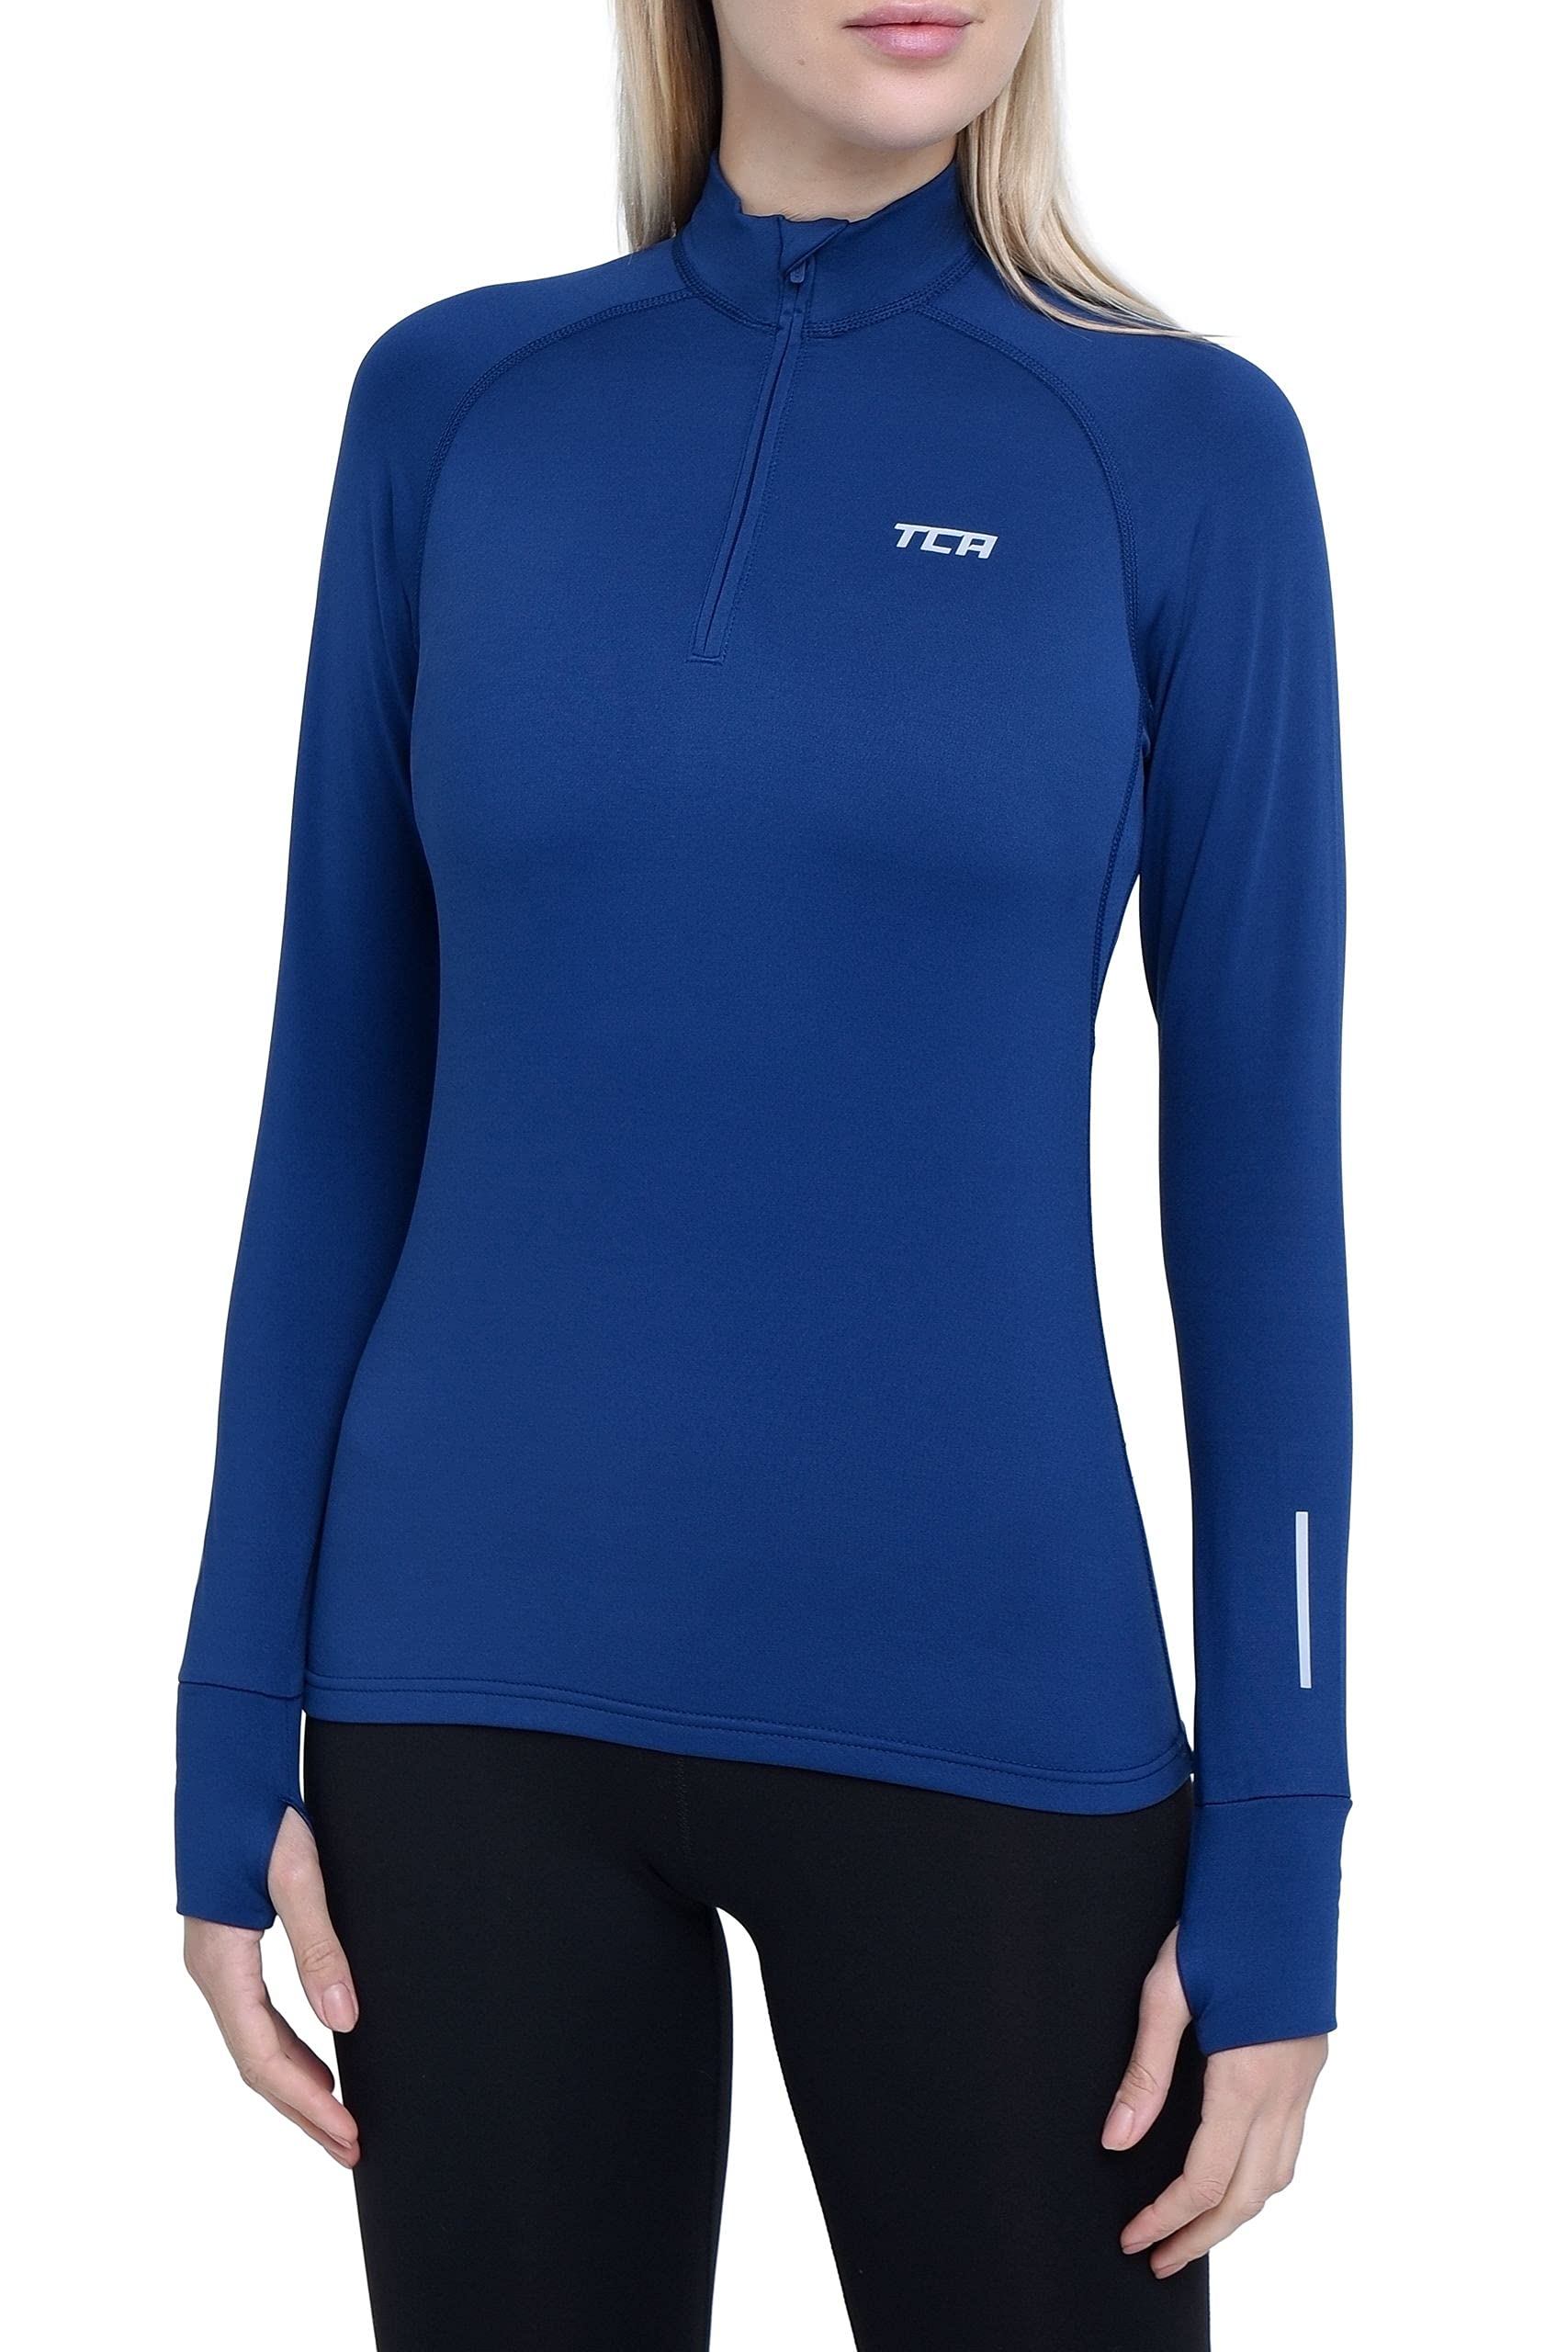 TCA Damen Winter Running Langarm Laufshirt mit Brustreißverschluss - Blau, L